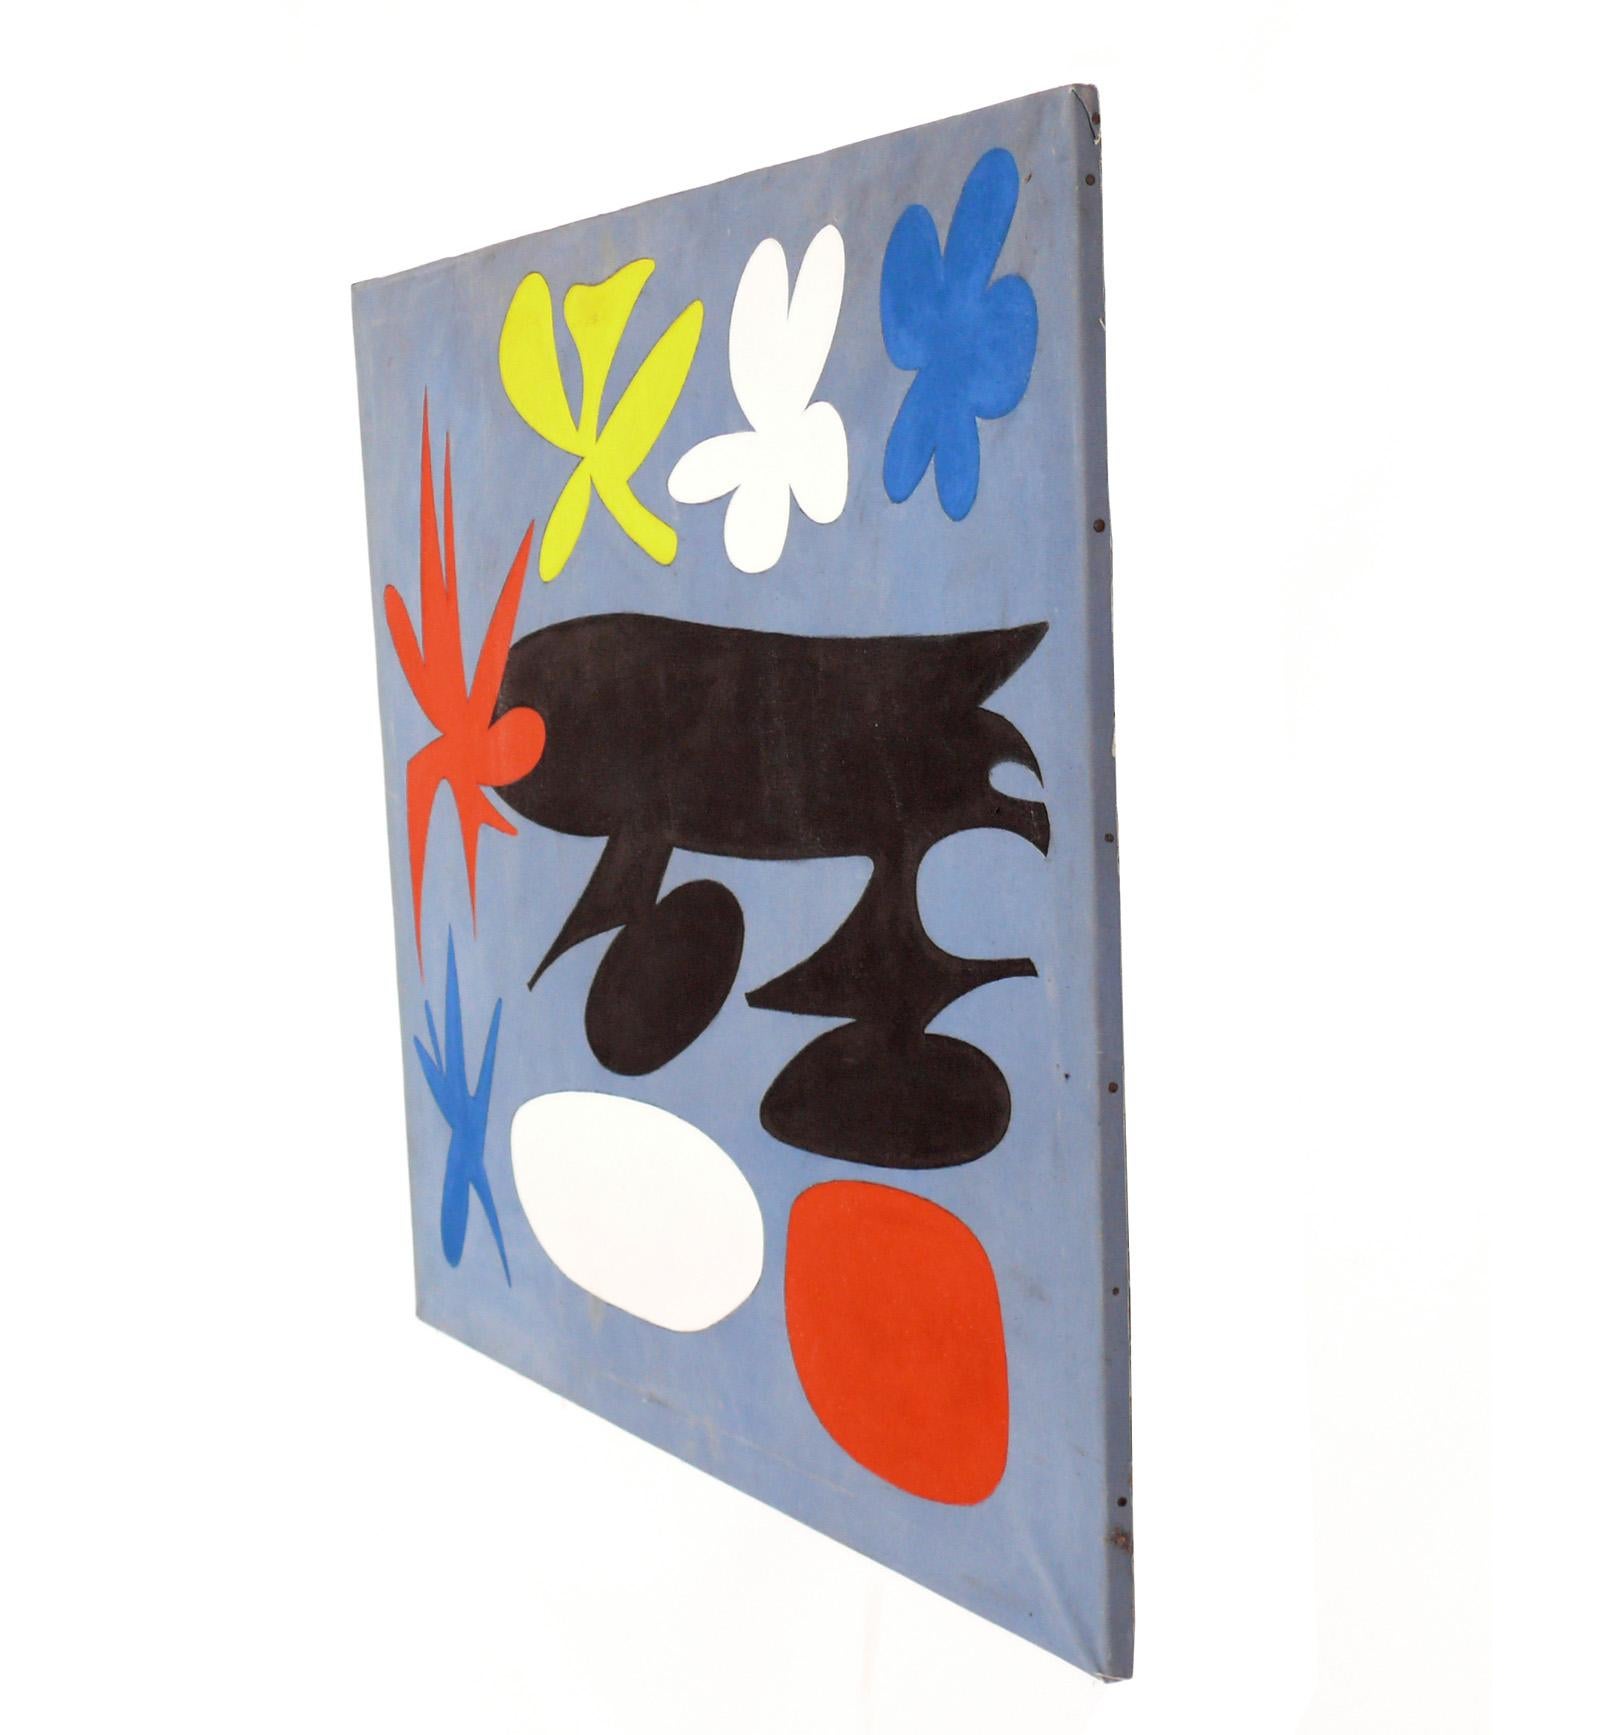 Großformatige abstrakte Malerei in der Art von Joan Miro, ca. 1960er Jahre. Er misst eine beeindruckende Breite von 43